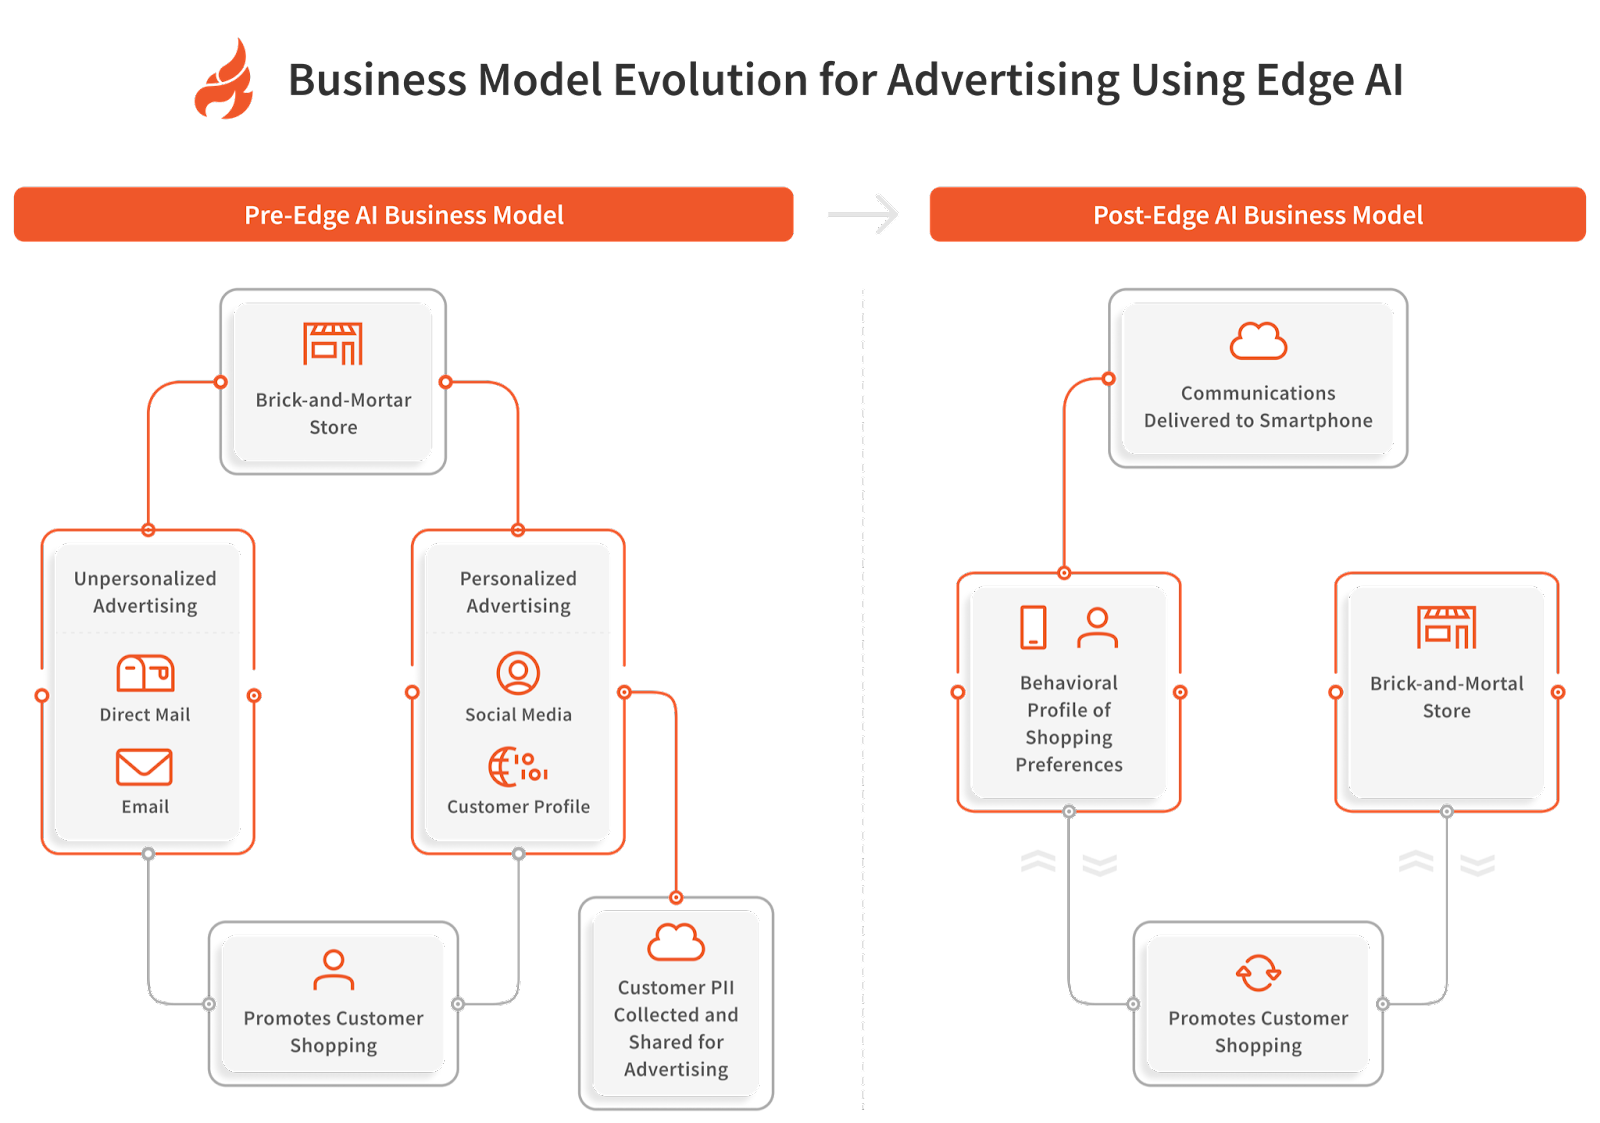 Business Model Evolution for Advertising using Edge AI